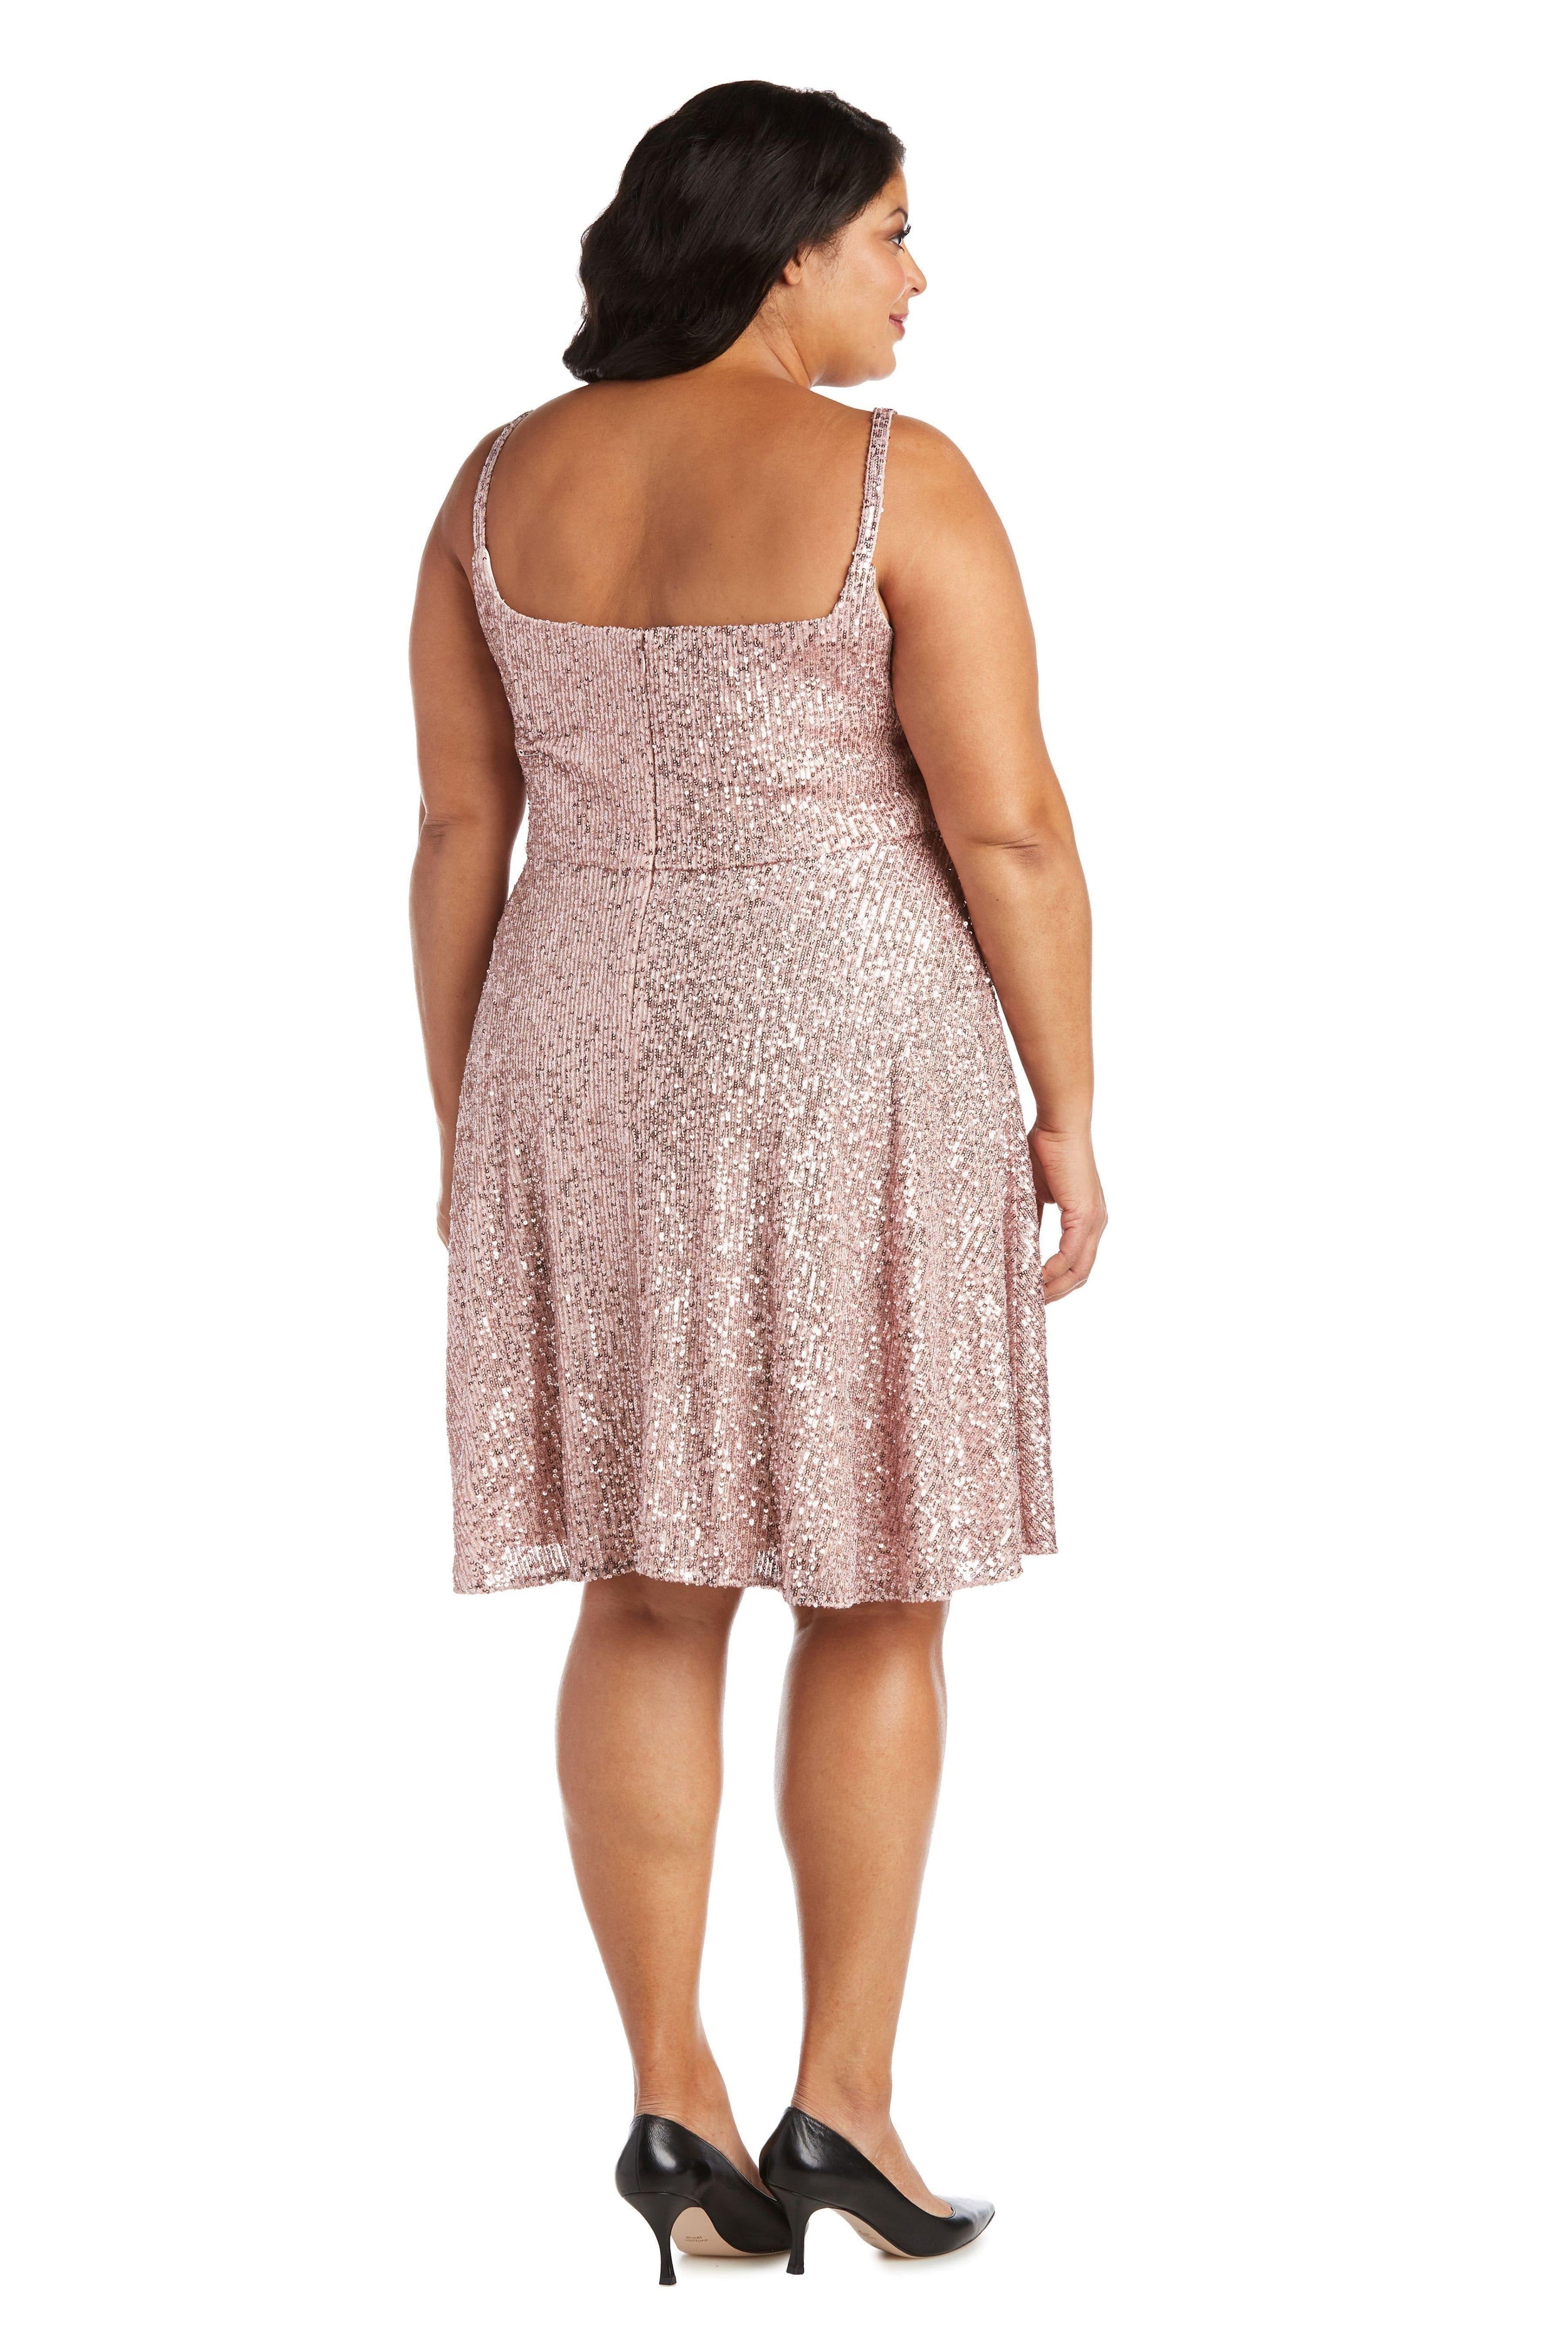 Morgan & Co Short Plus Size Sequins Dress 12890WM - The Dress Outlet